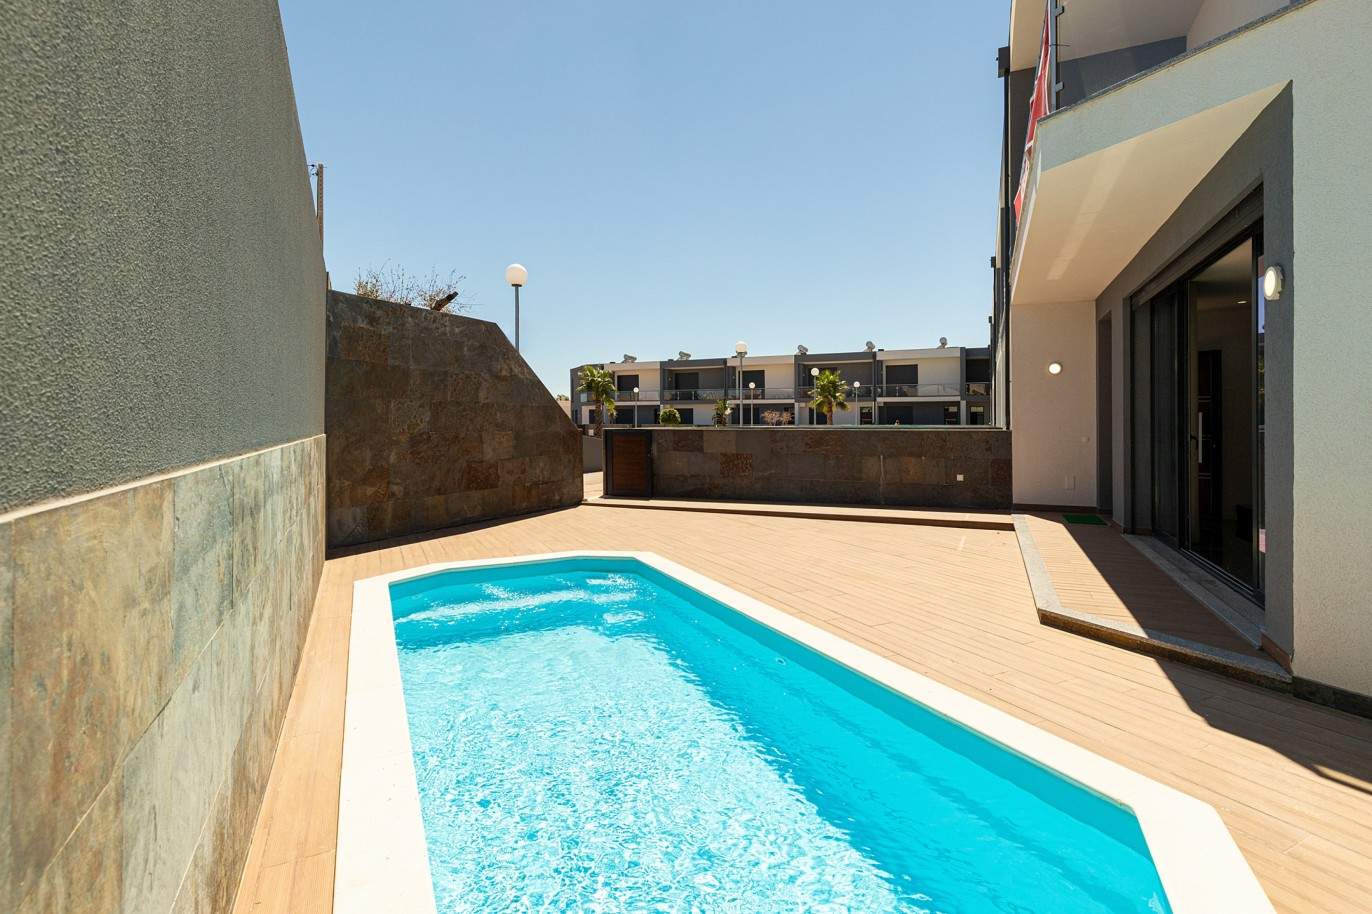 Venda de moradia nova com piscina em Albufeira, Algarve_199774